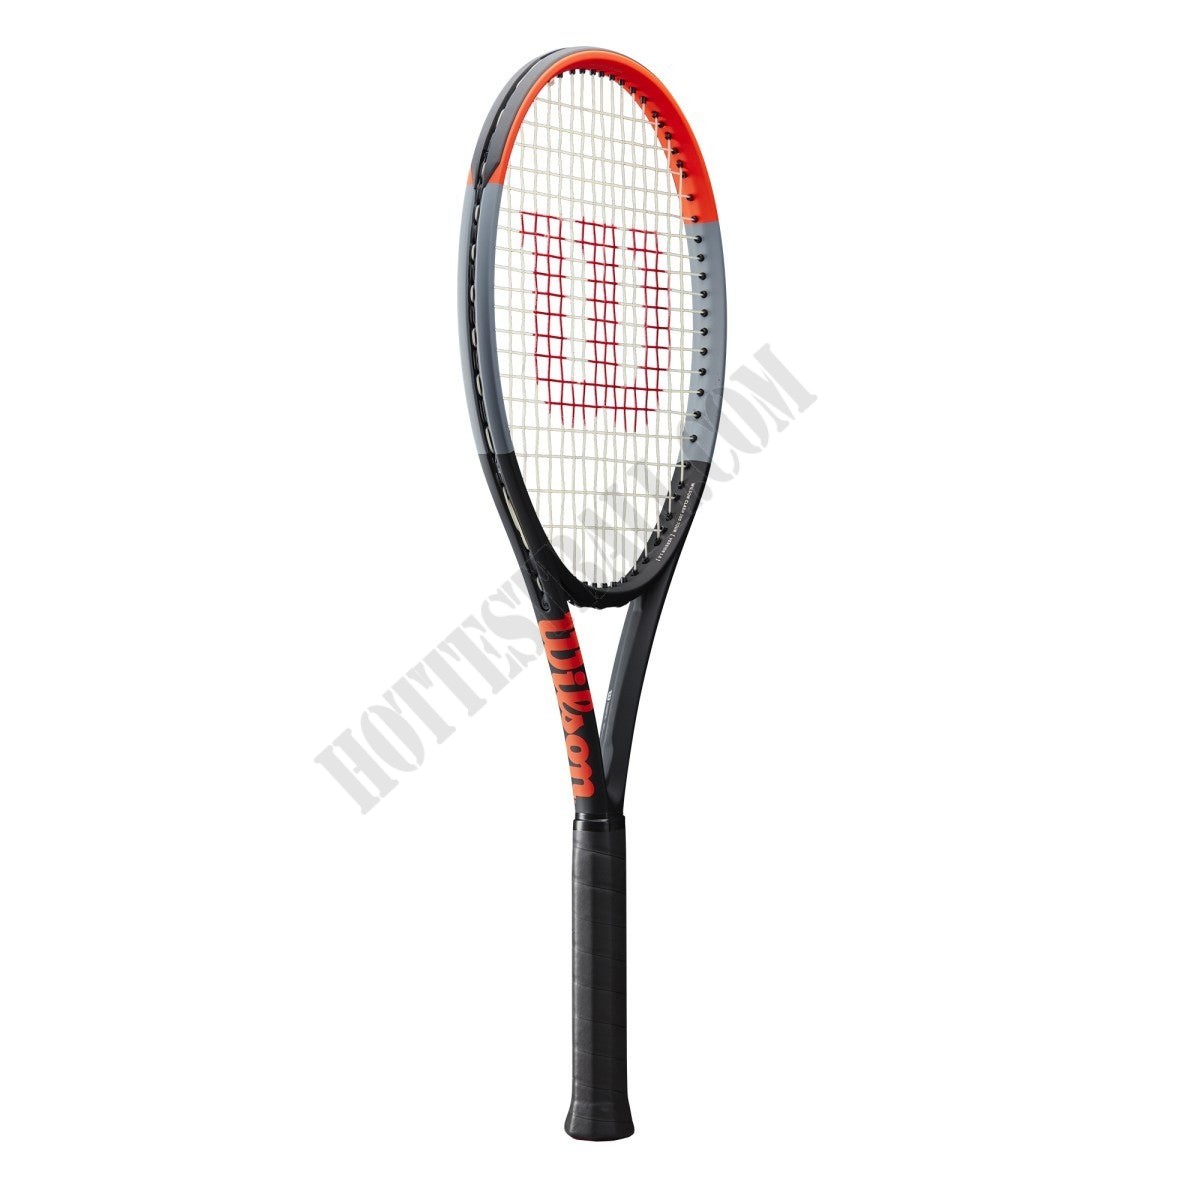 Clash 100 Tennis Racket - Wilson Discount Store - Clash 100 Tennis Racket - Wilson Discount Store